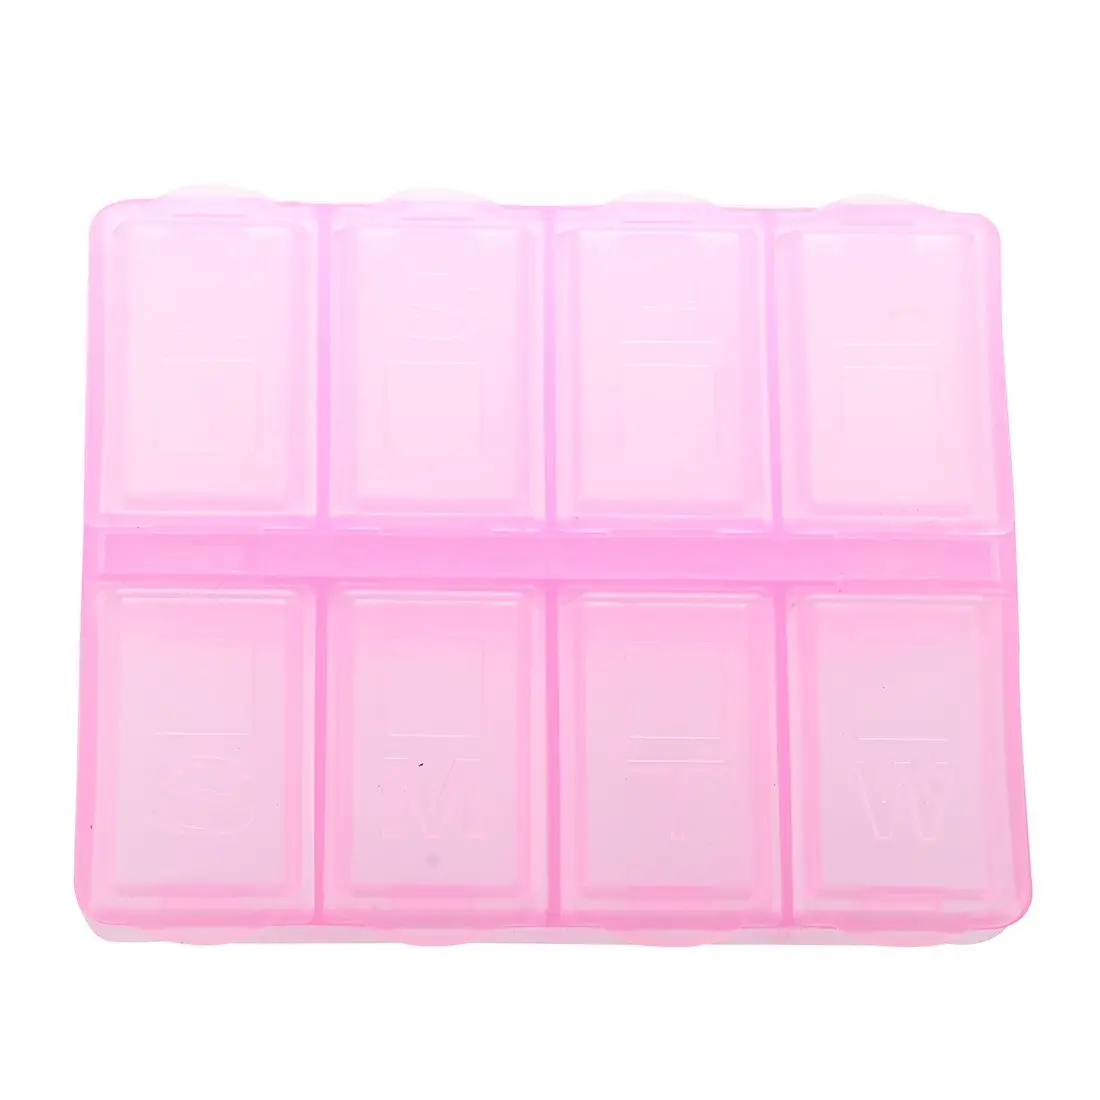 Пластик Прямоугольник 8 отсеков 7 дней медицины Pill Box розовый